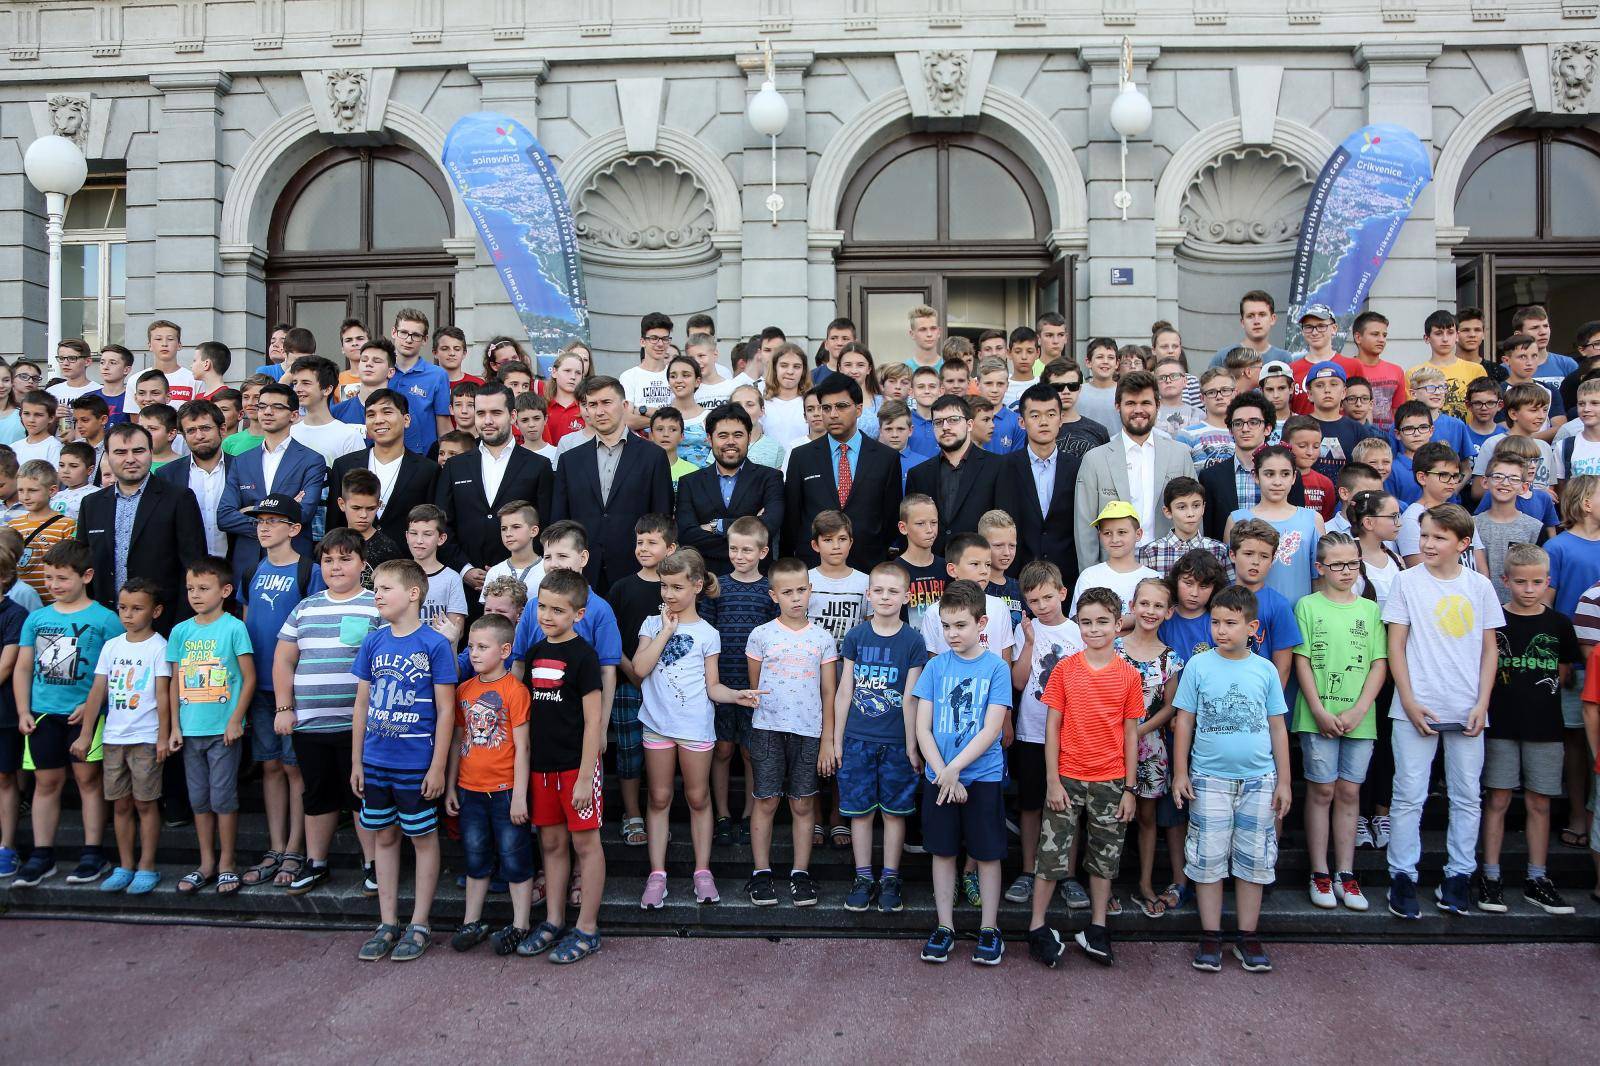 Zagreb: Otvorenje Å¡ahovskog turnira Croatia Chess Tour 2019.